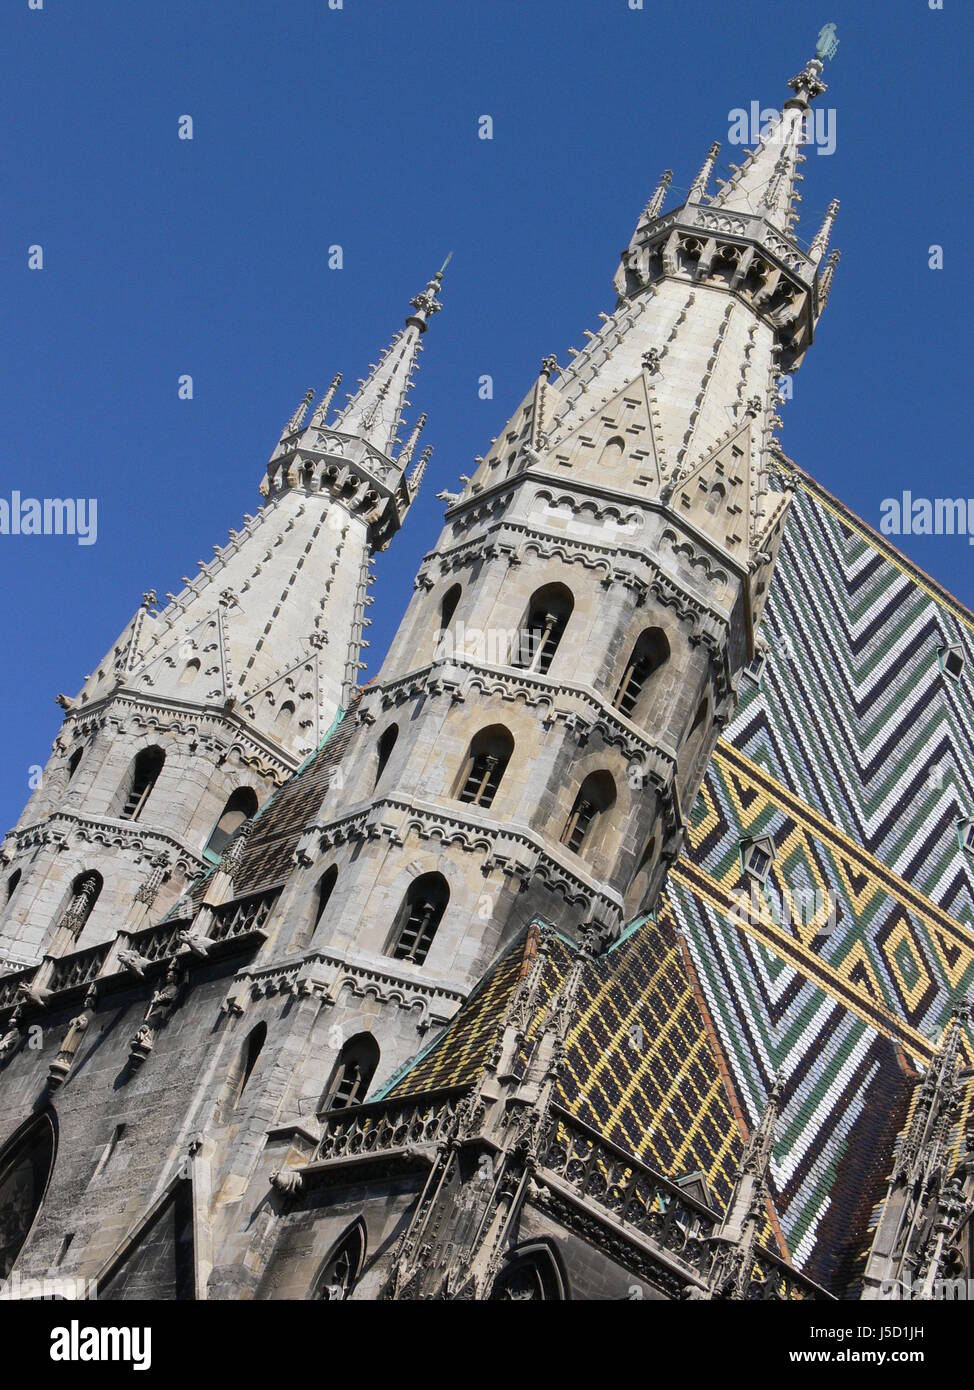 Vienna Austria facciata turistica touristic sterreich wien architecktur architecture Foto Stock